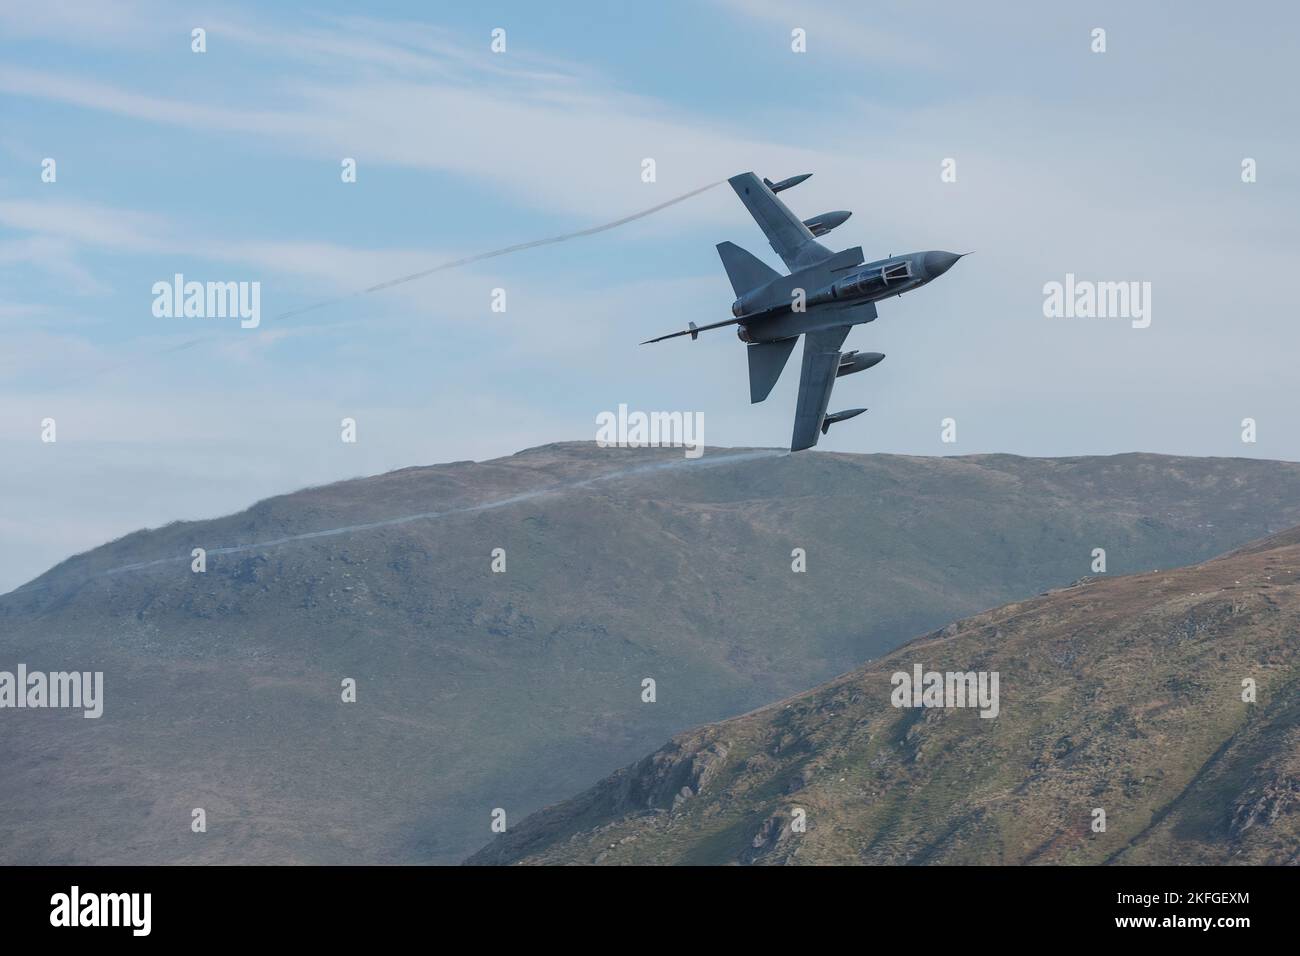 Preso il 1 novembre 2017 nel Mach Loop, Galles, Regno Unito. Foto del jet da caccia Tornado RAF che vola a bassa quota sulle colline del Galles. Foto Stock